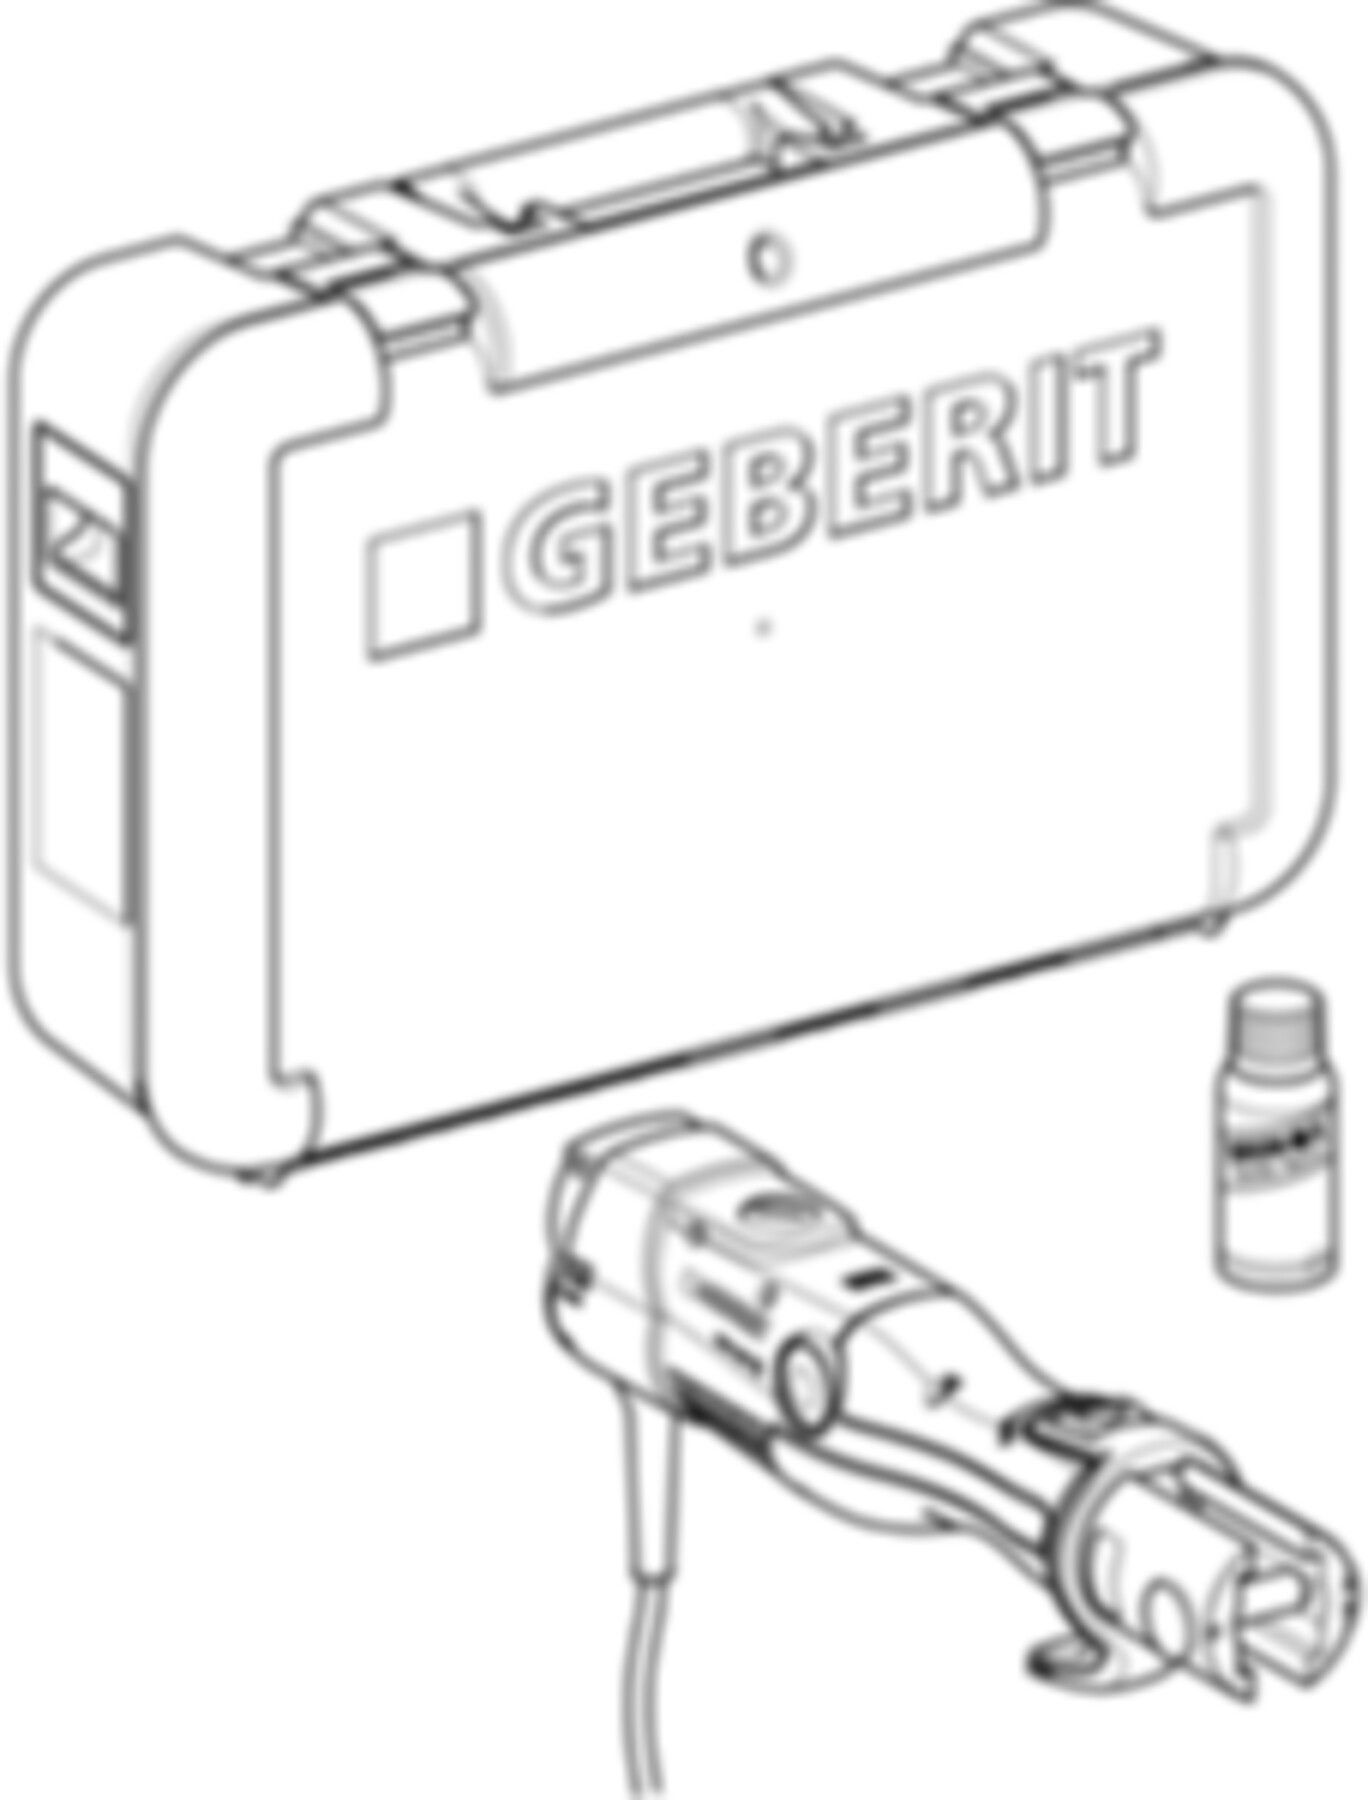 Presswerkzeug ECO203 (2) 691.024.P3.1 im Koffer, Netzbetrieb, mit FlowFit Einsatz - Geberit Werkzeuge und Zubehör